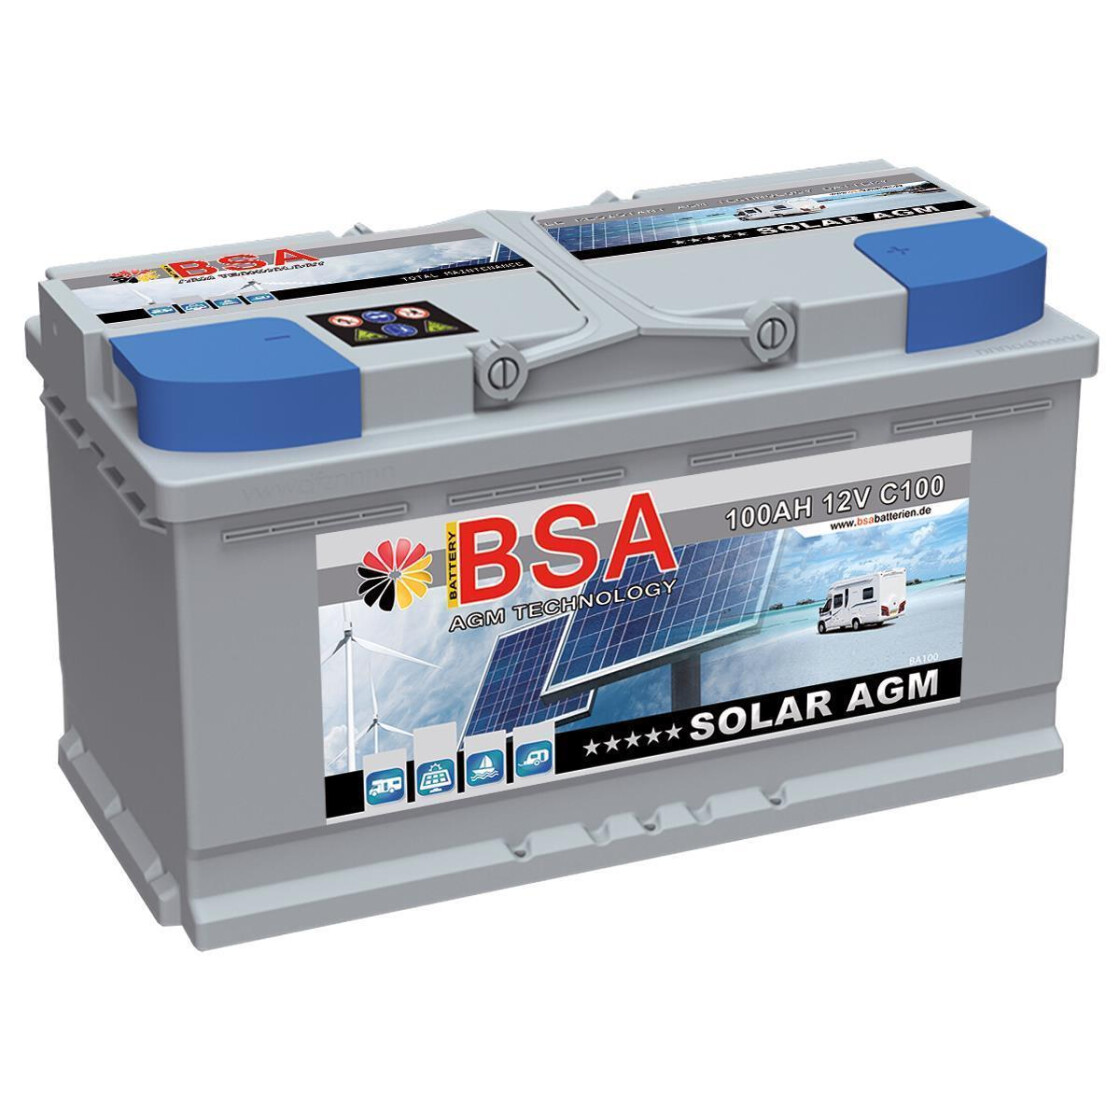 BSA Solarbatterie AGM 100Ah 12V, 163,87 €